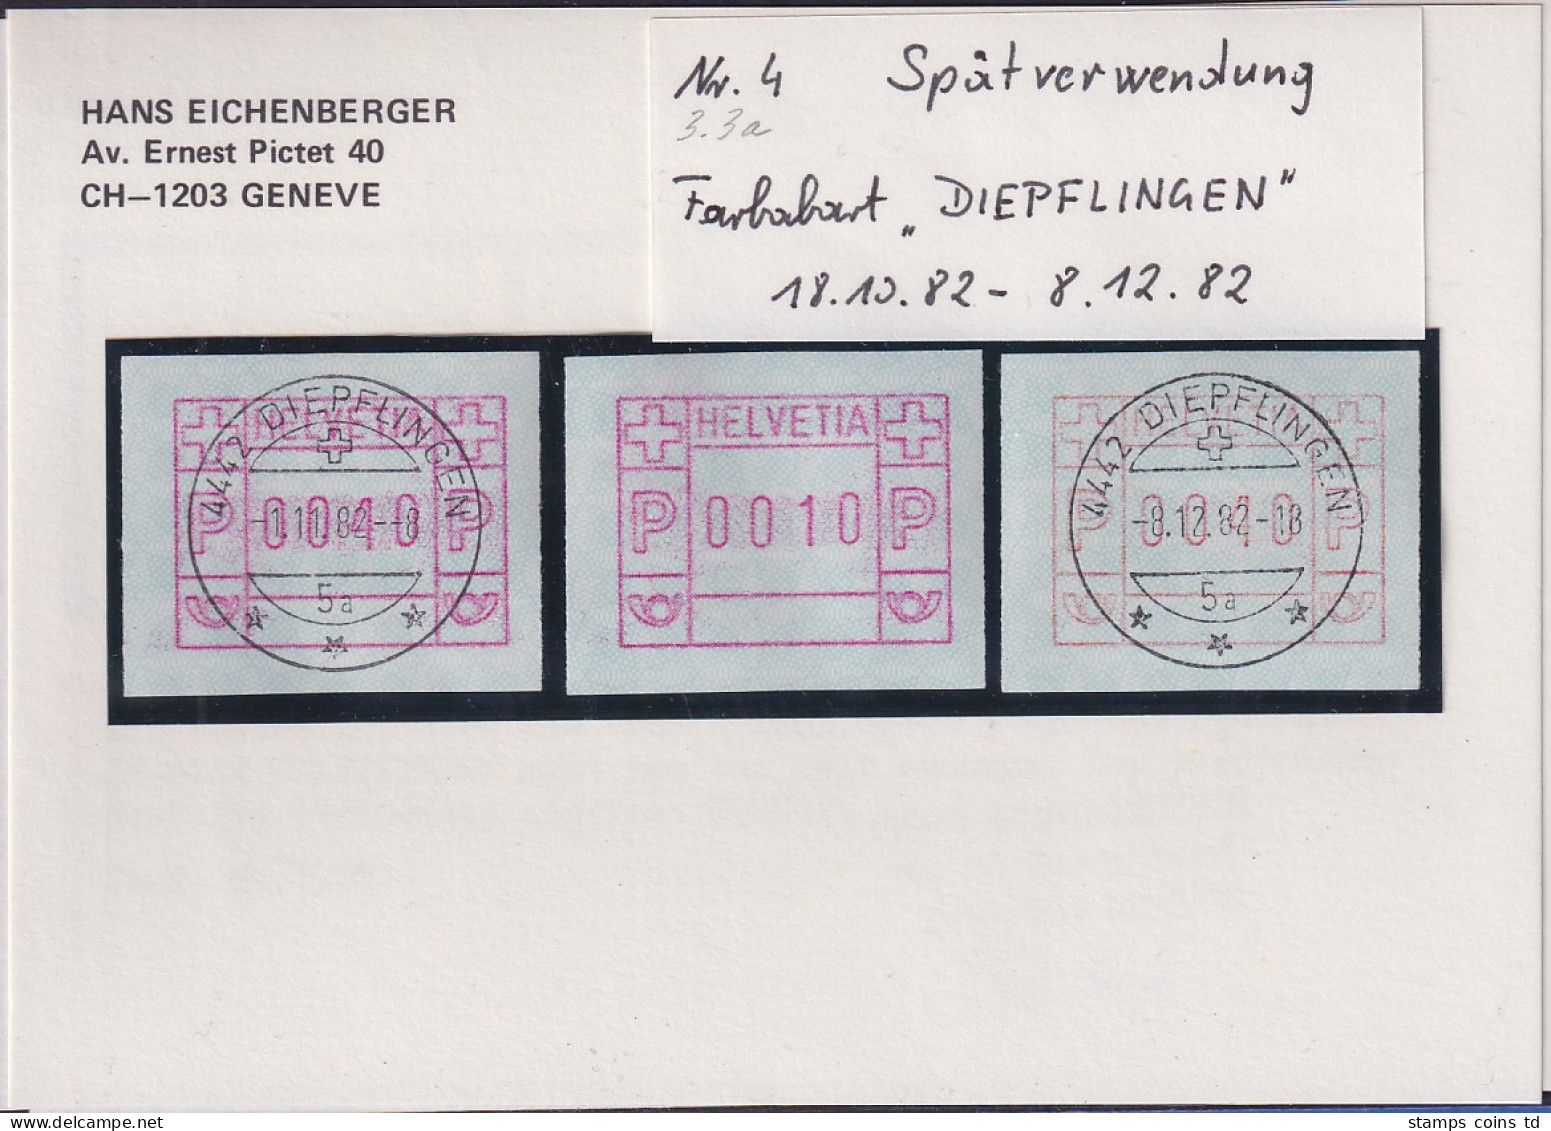 Schweiz FRAMA-ATM Mi-Nr. 3.3a Spätverwendung DIEPFLINGEN 18.10. Bis 8.12. 82  - Automatic Stamps